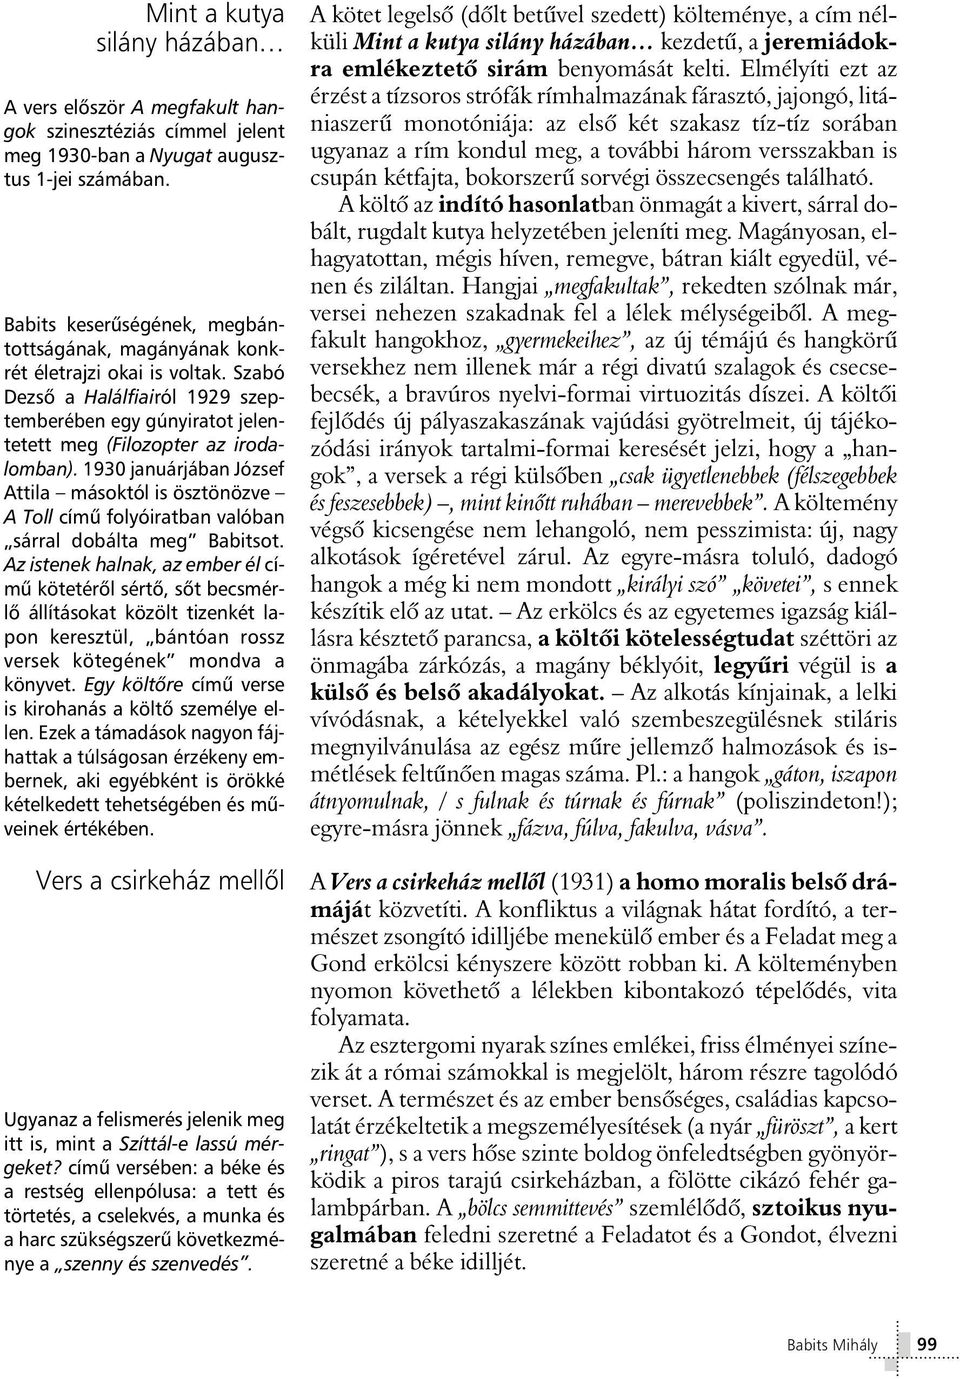 Babits Mihály. Tartalmi és formai sokszínûség. Messze messze. Fekete ország  - PDF Free Download